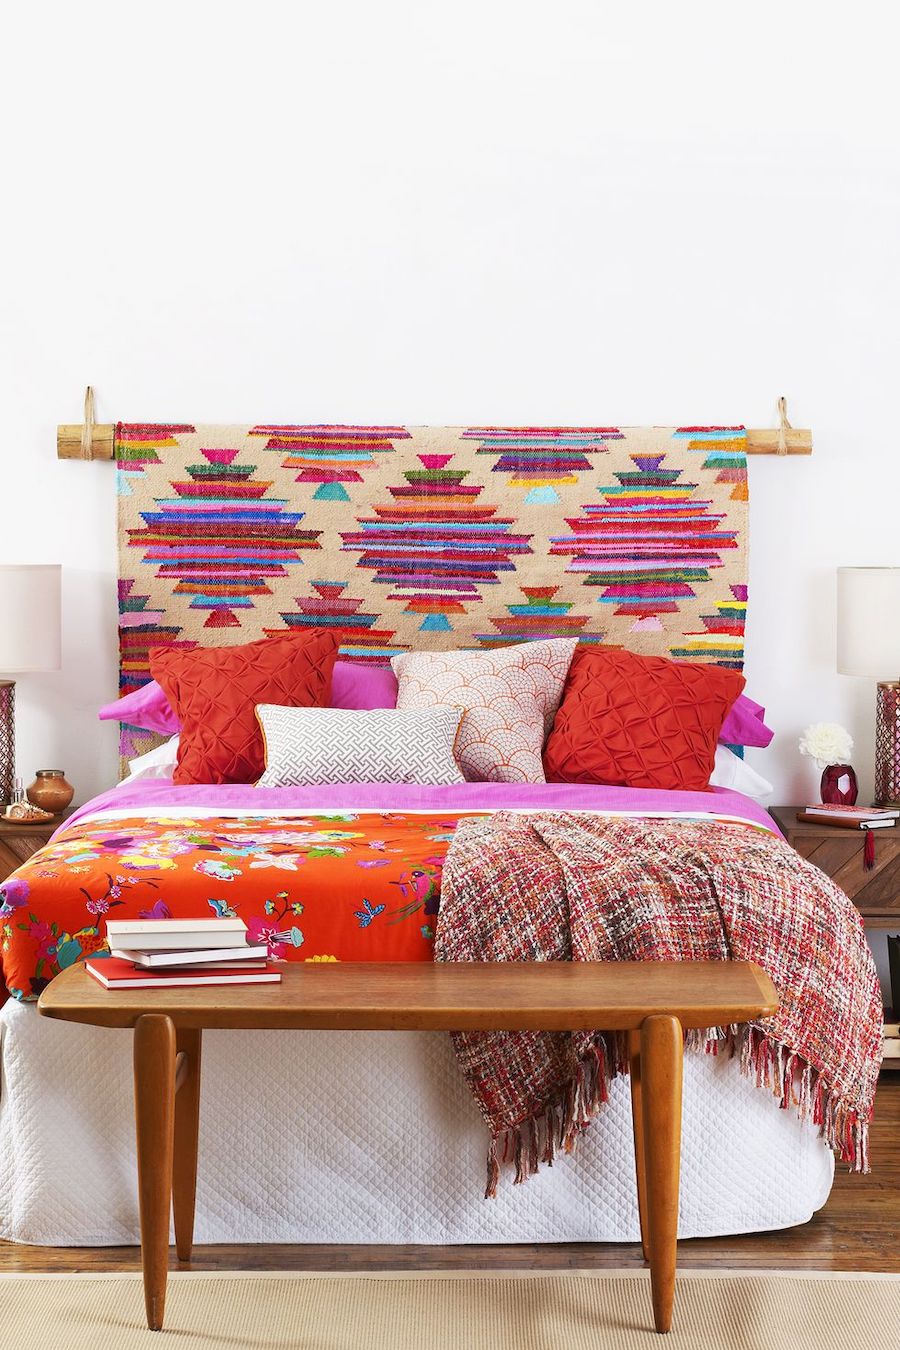 Dormitorio con pared blanca y piso de madera. En vez de respaldo de cama hay una alfombra de colores. Los cojines de la cama son rojos y rosados. Y también hay mantas en tonos rojizos. 